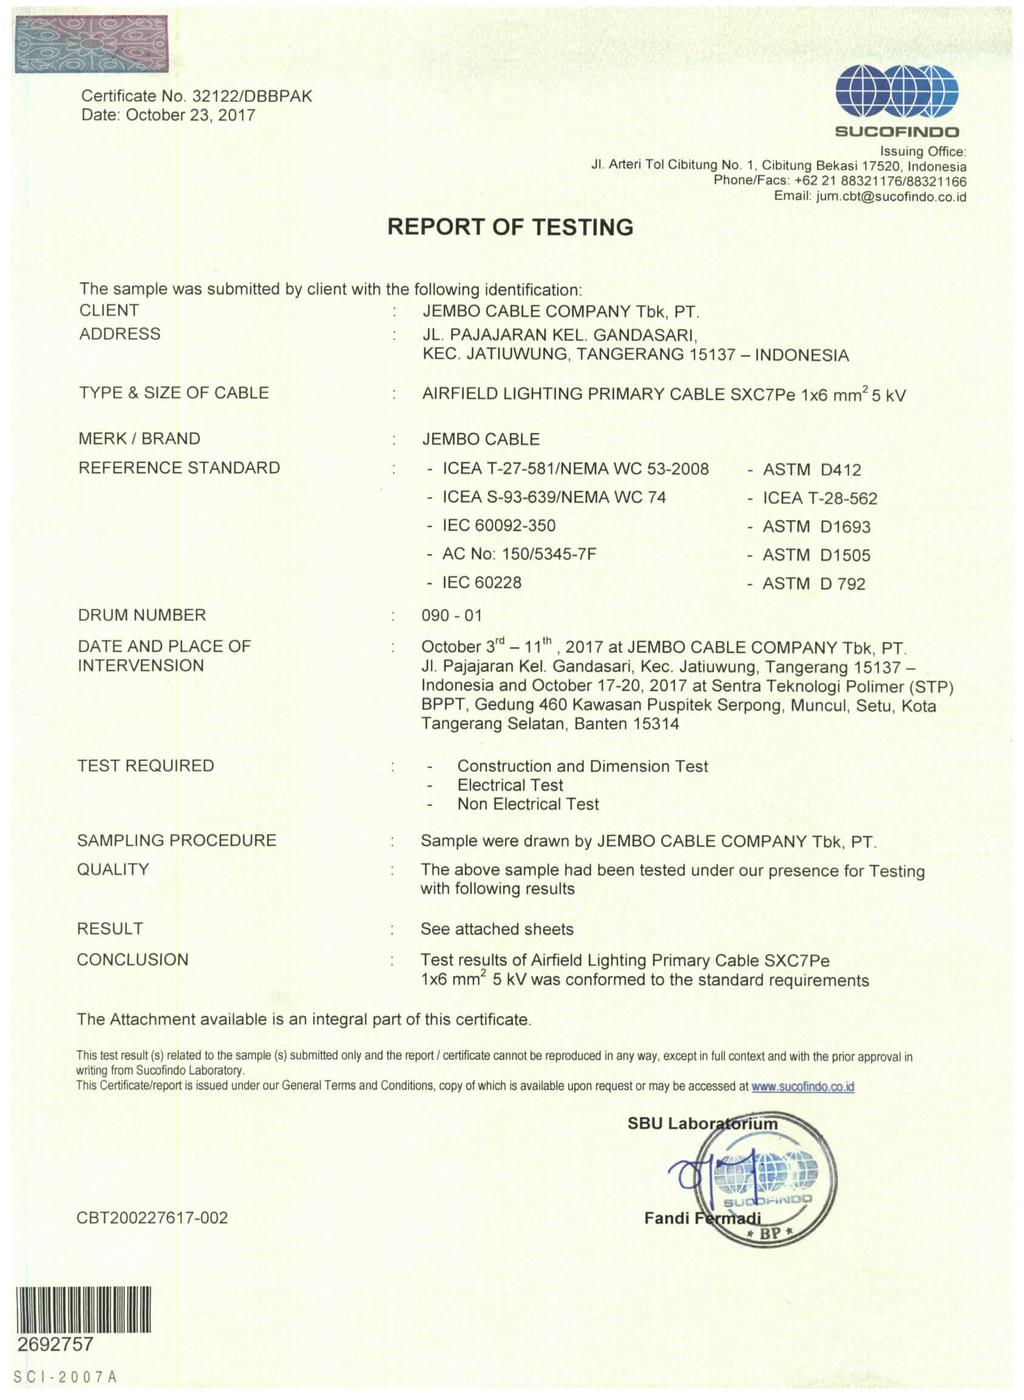 Certificate No. 32122/DBBPAK REPORT OF TESTING @ -i^ - - I -. I I @ ' SUGOFIBMDQ Jl. Arteri Tol Cibitung No.